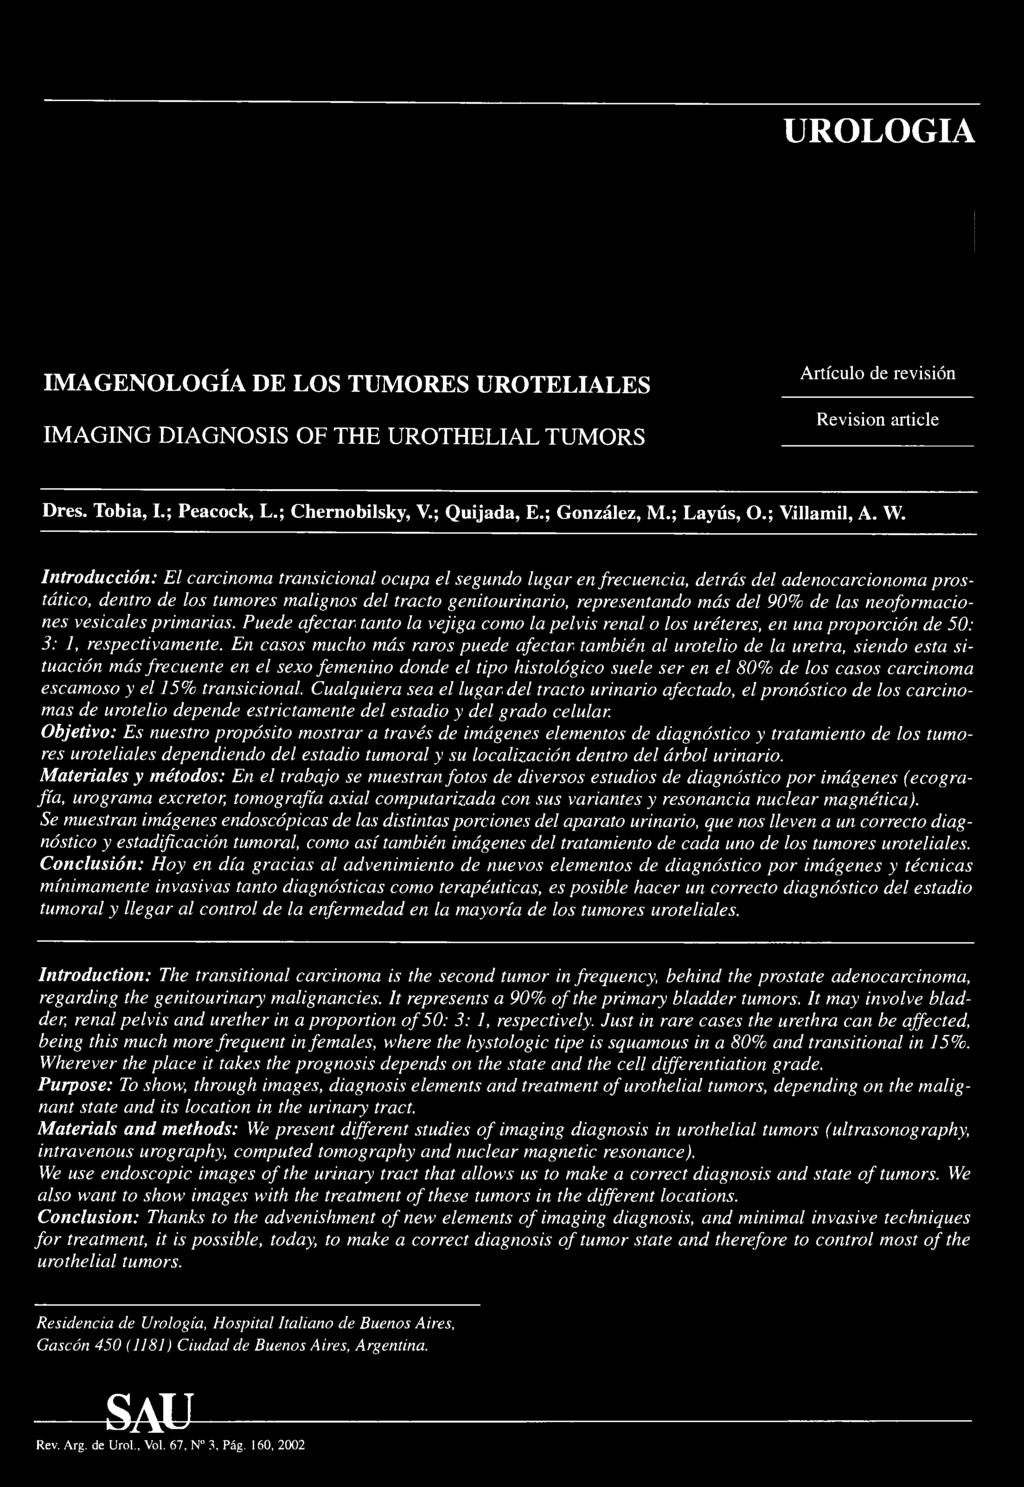 UROLOGIA IMAGENOLOGÍA DE LOS TUMORES UROTELIALES IMAGING DIAGNOSIS OF THE UROTHELIAL TUMORS Artículo de revisión Revisión article Dres. Tobia, I.; Peacock, L.; Chernobilsky, V.; Quijada, E.